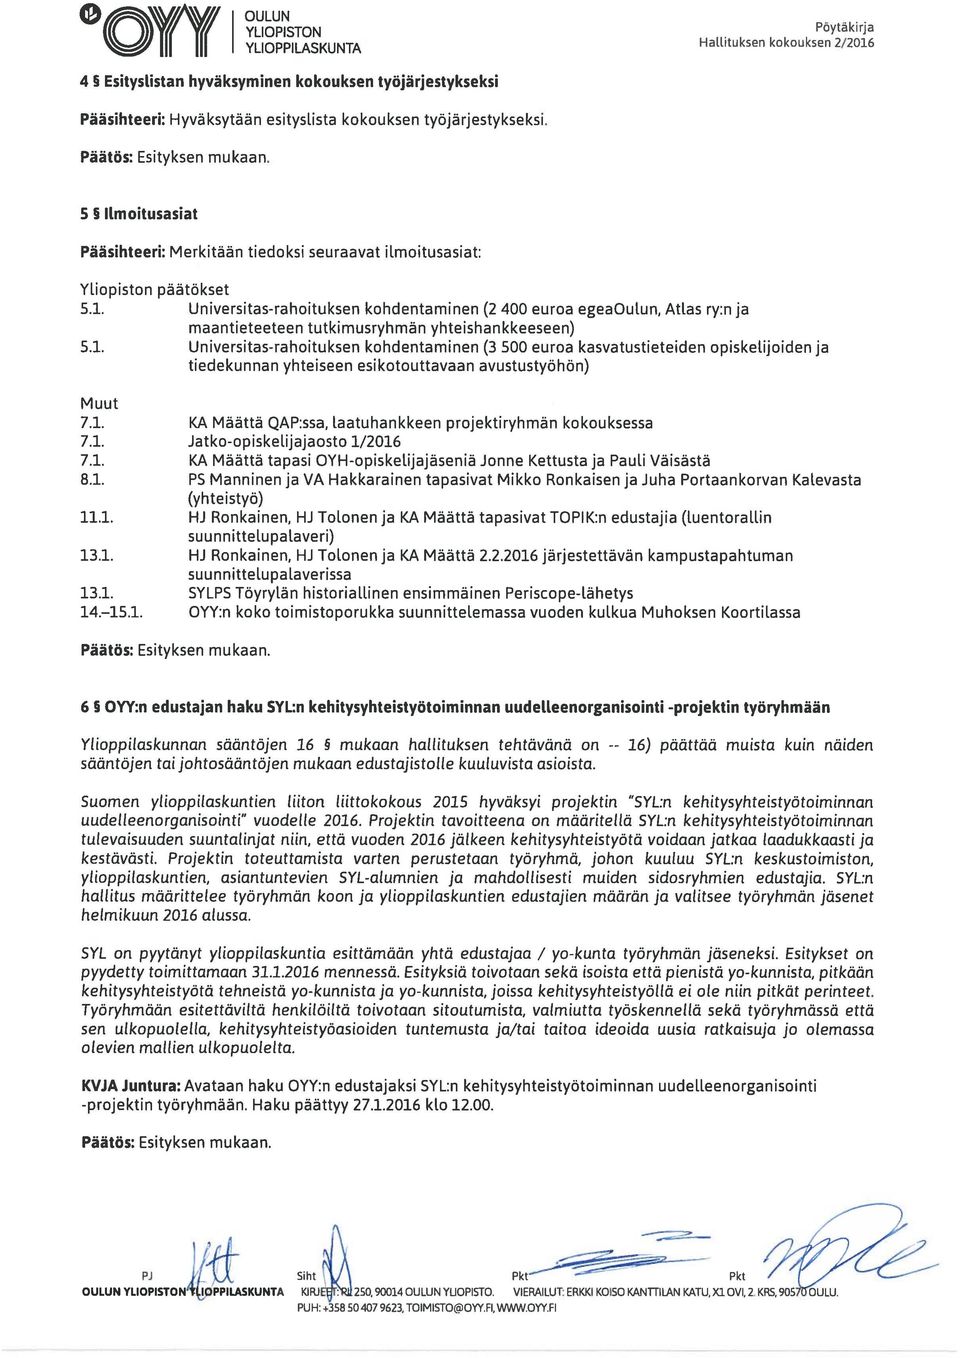 Universitas-rahoituksen kohdentaminen (2 400 euroa egeaoulun, Atlas ry:n ja maantieteeteen tutkimusryhmän yhteishankkeeseen) 5.1.